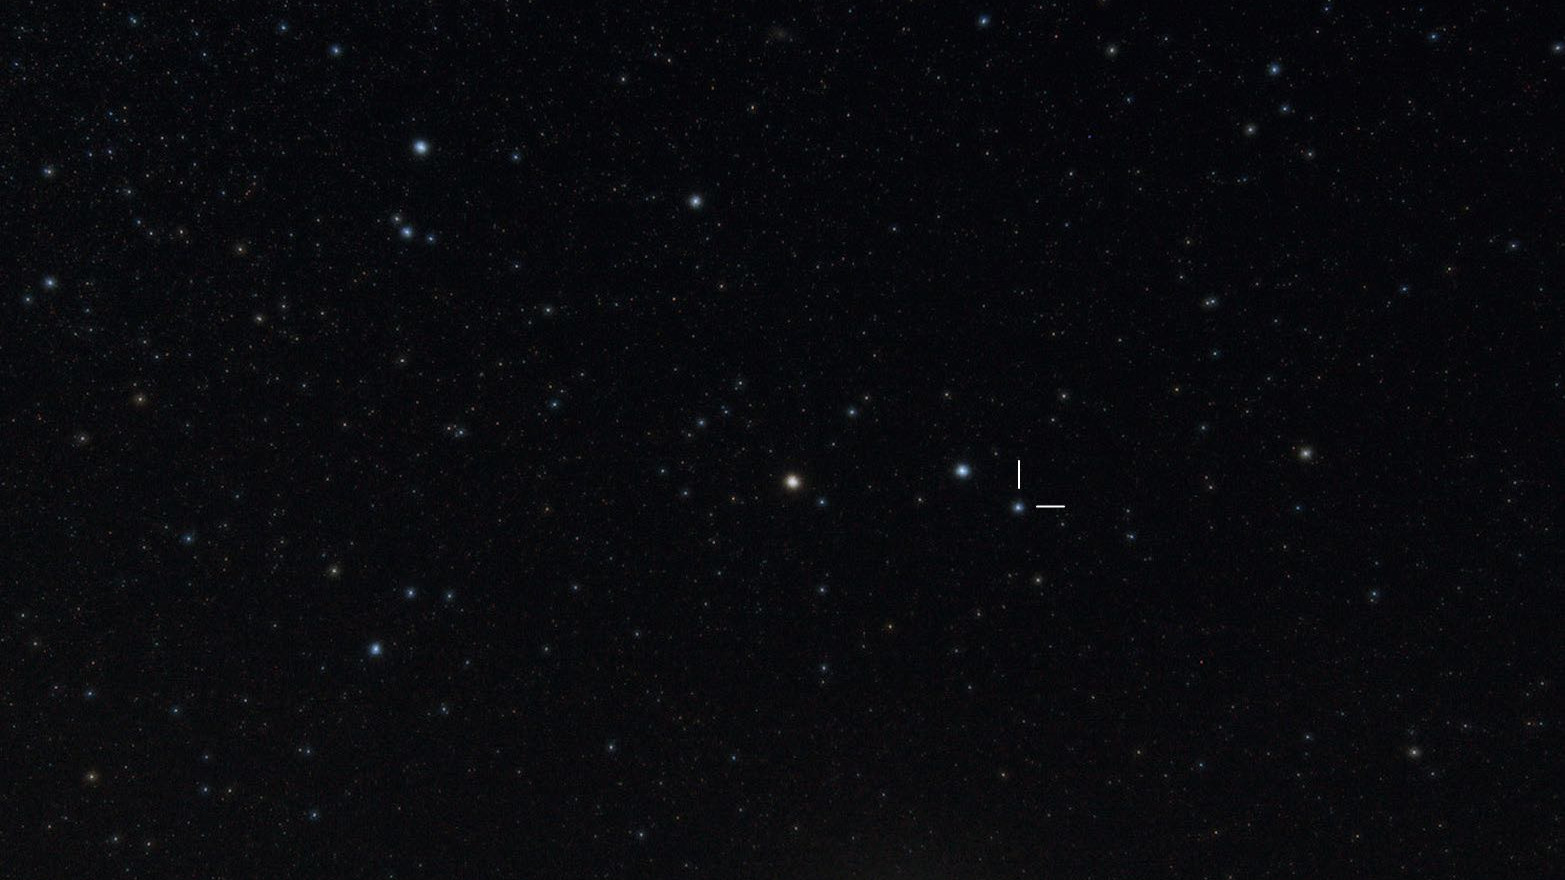 A γ Arietis está situada no corno esquerdo da constelação Carneiro. Bernhard Hubl 